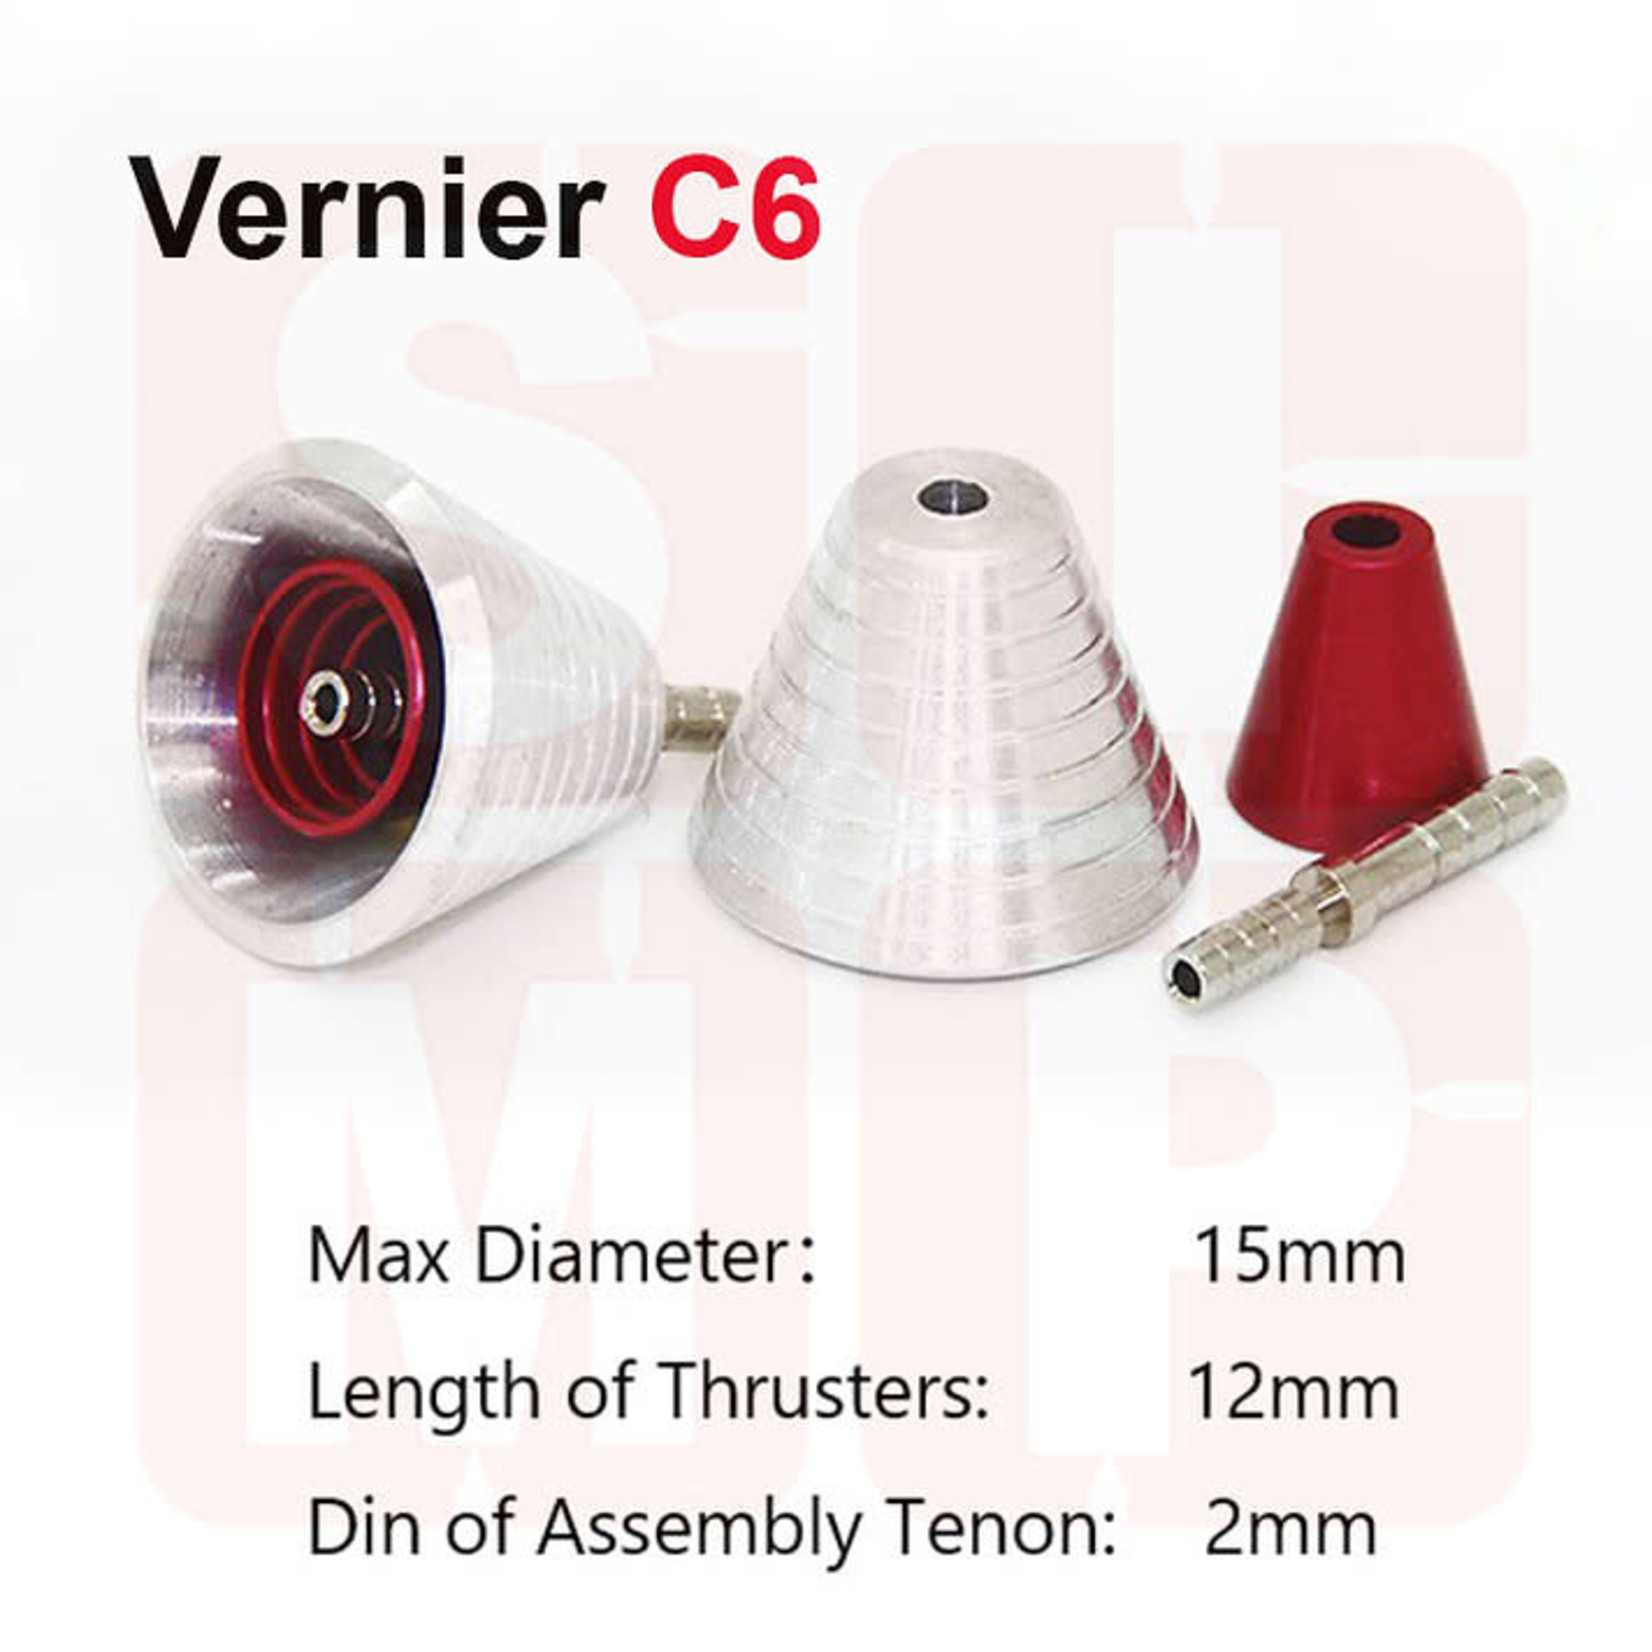 SIMP Model SIM07-00-C6 SIMP Model Metal Vernier C6 (Red)